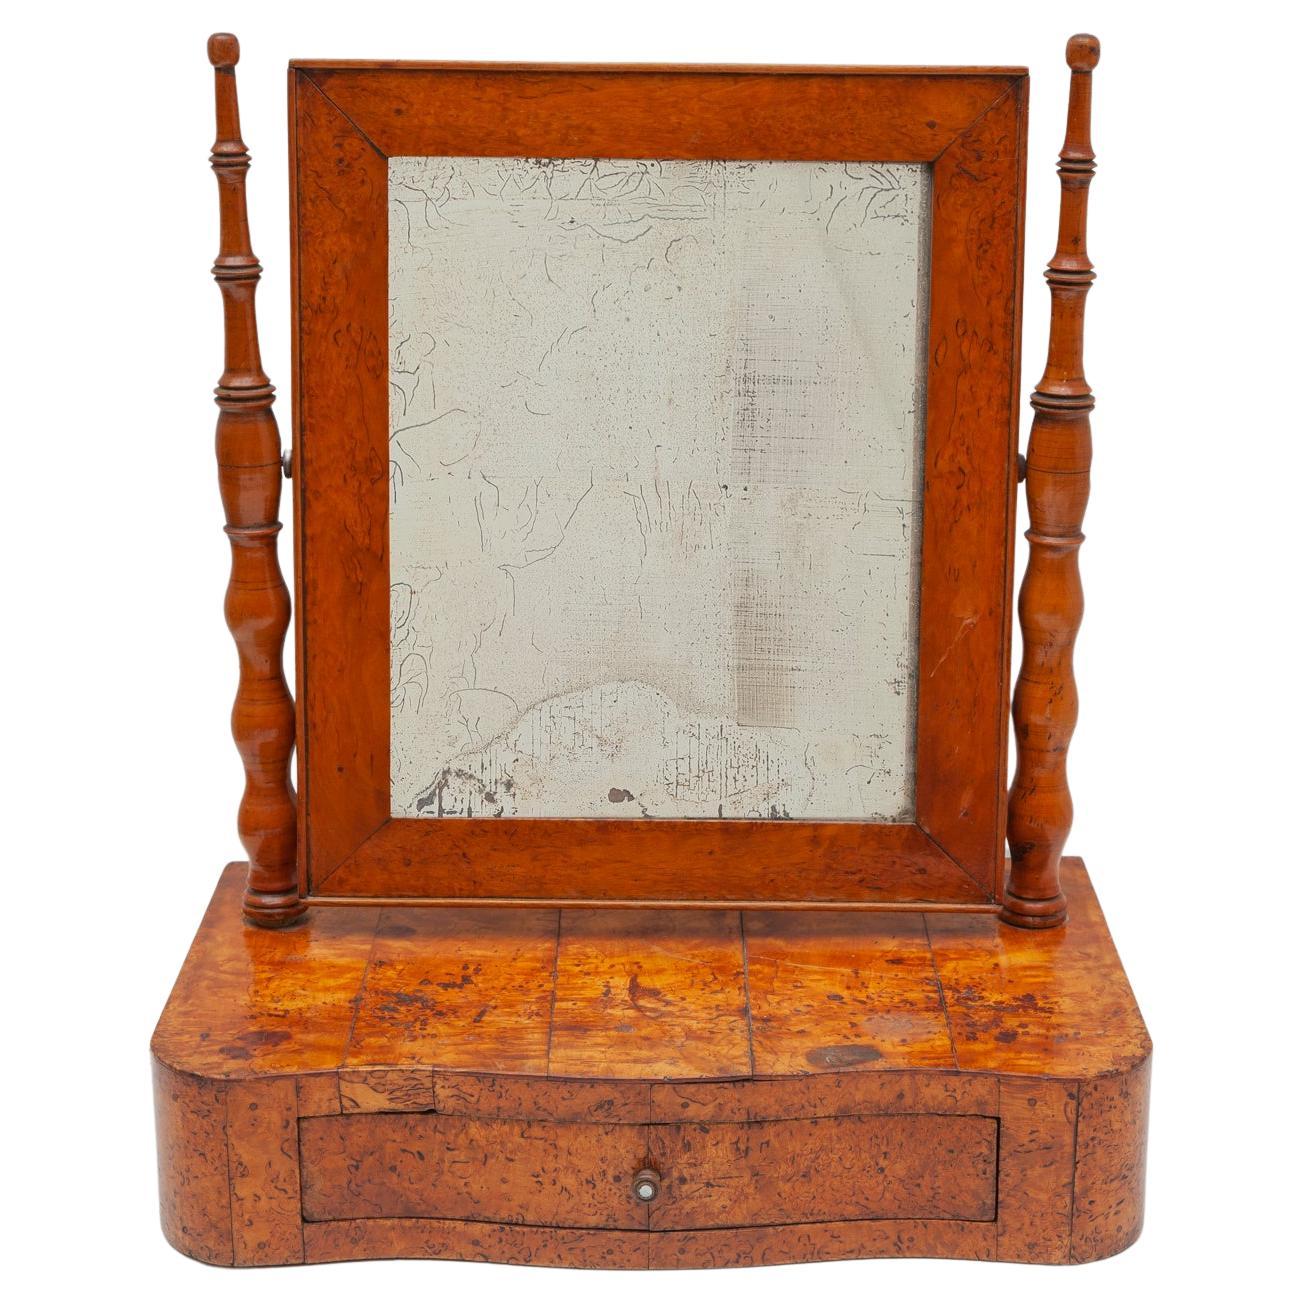 Antique Biedermeier Vanity Table Mirror in Burlwood, 19th Century, Germany For Sale